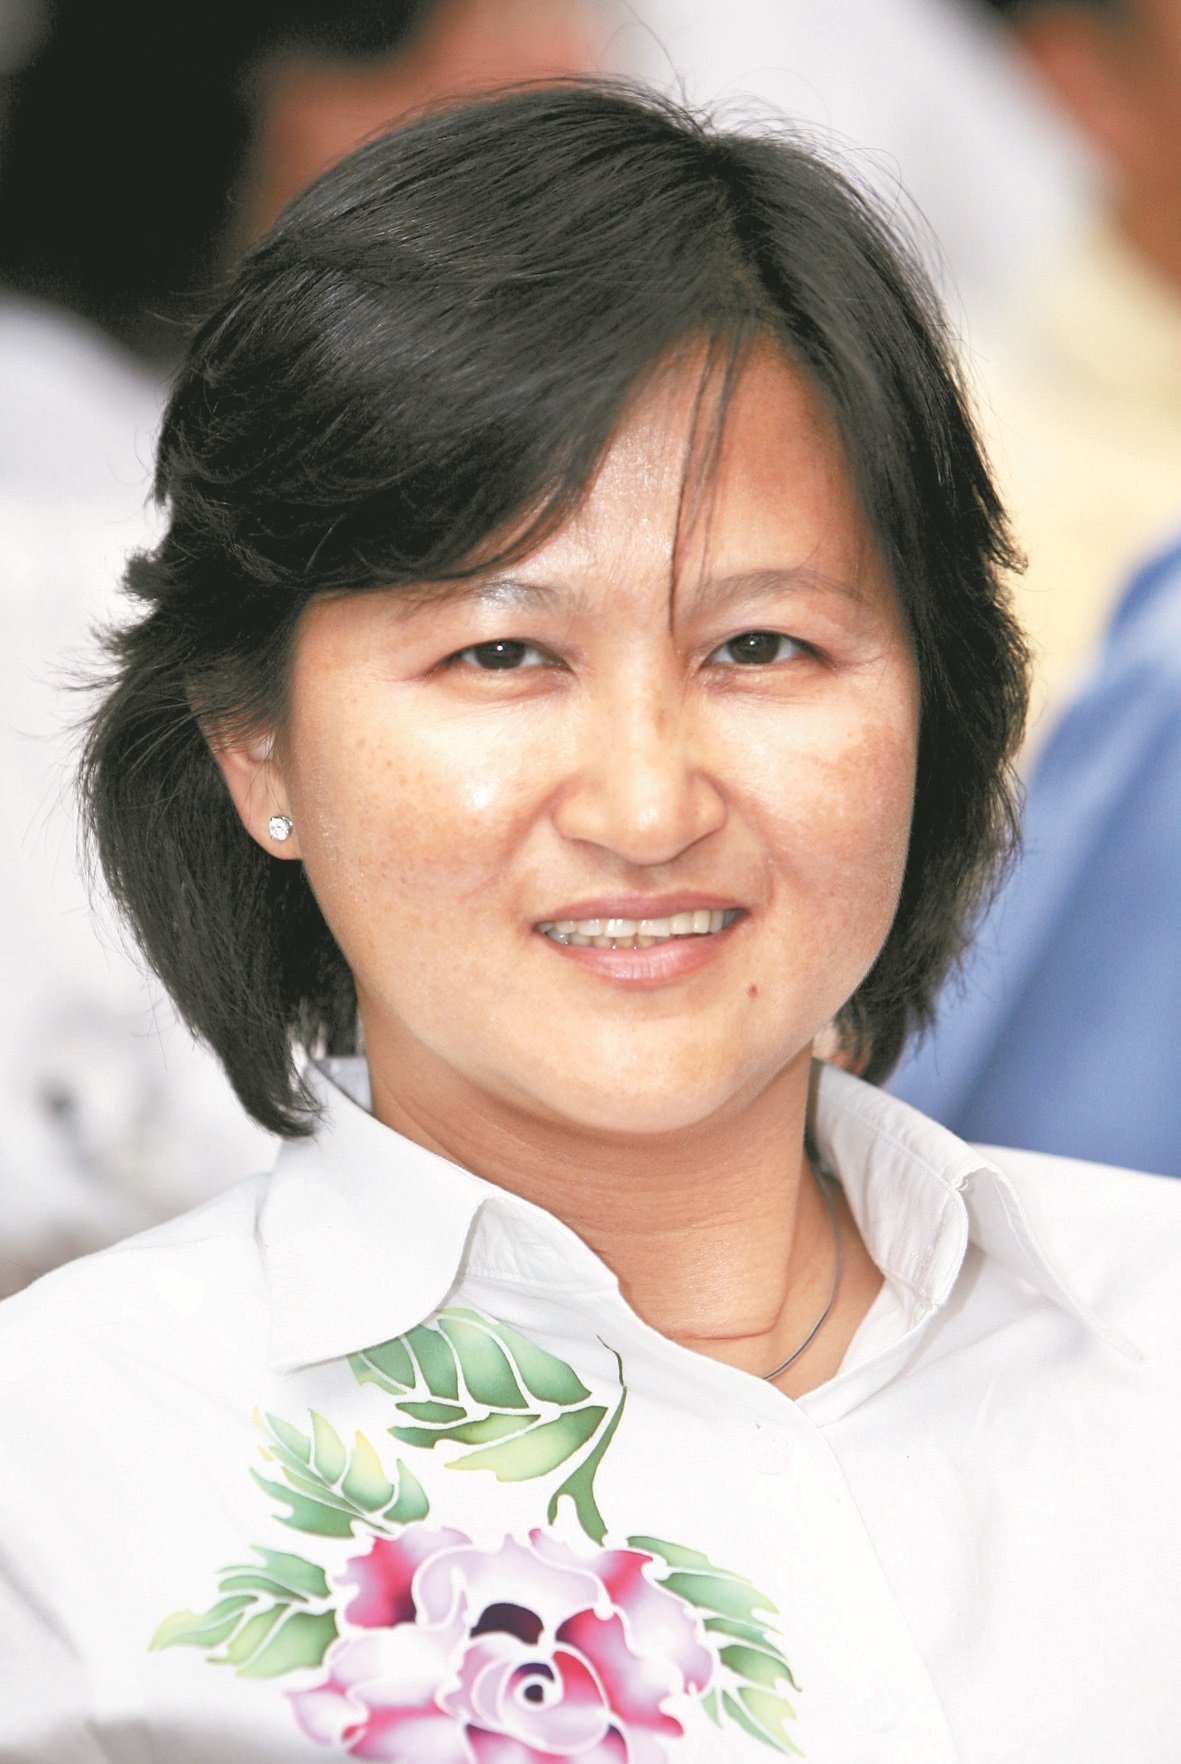 马来西亚燕农合作社主席  吴秀丽